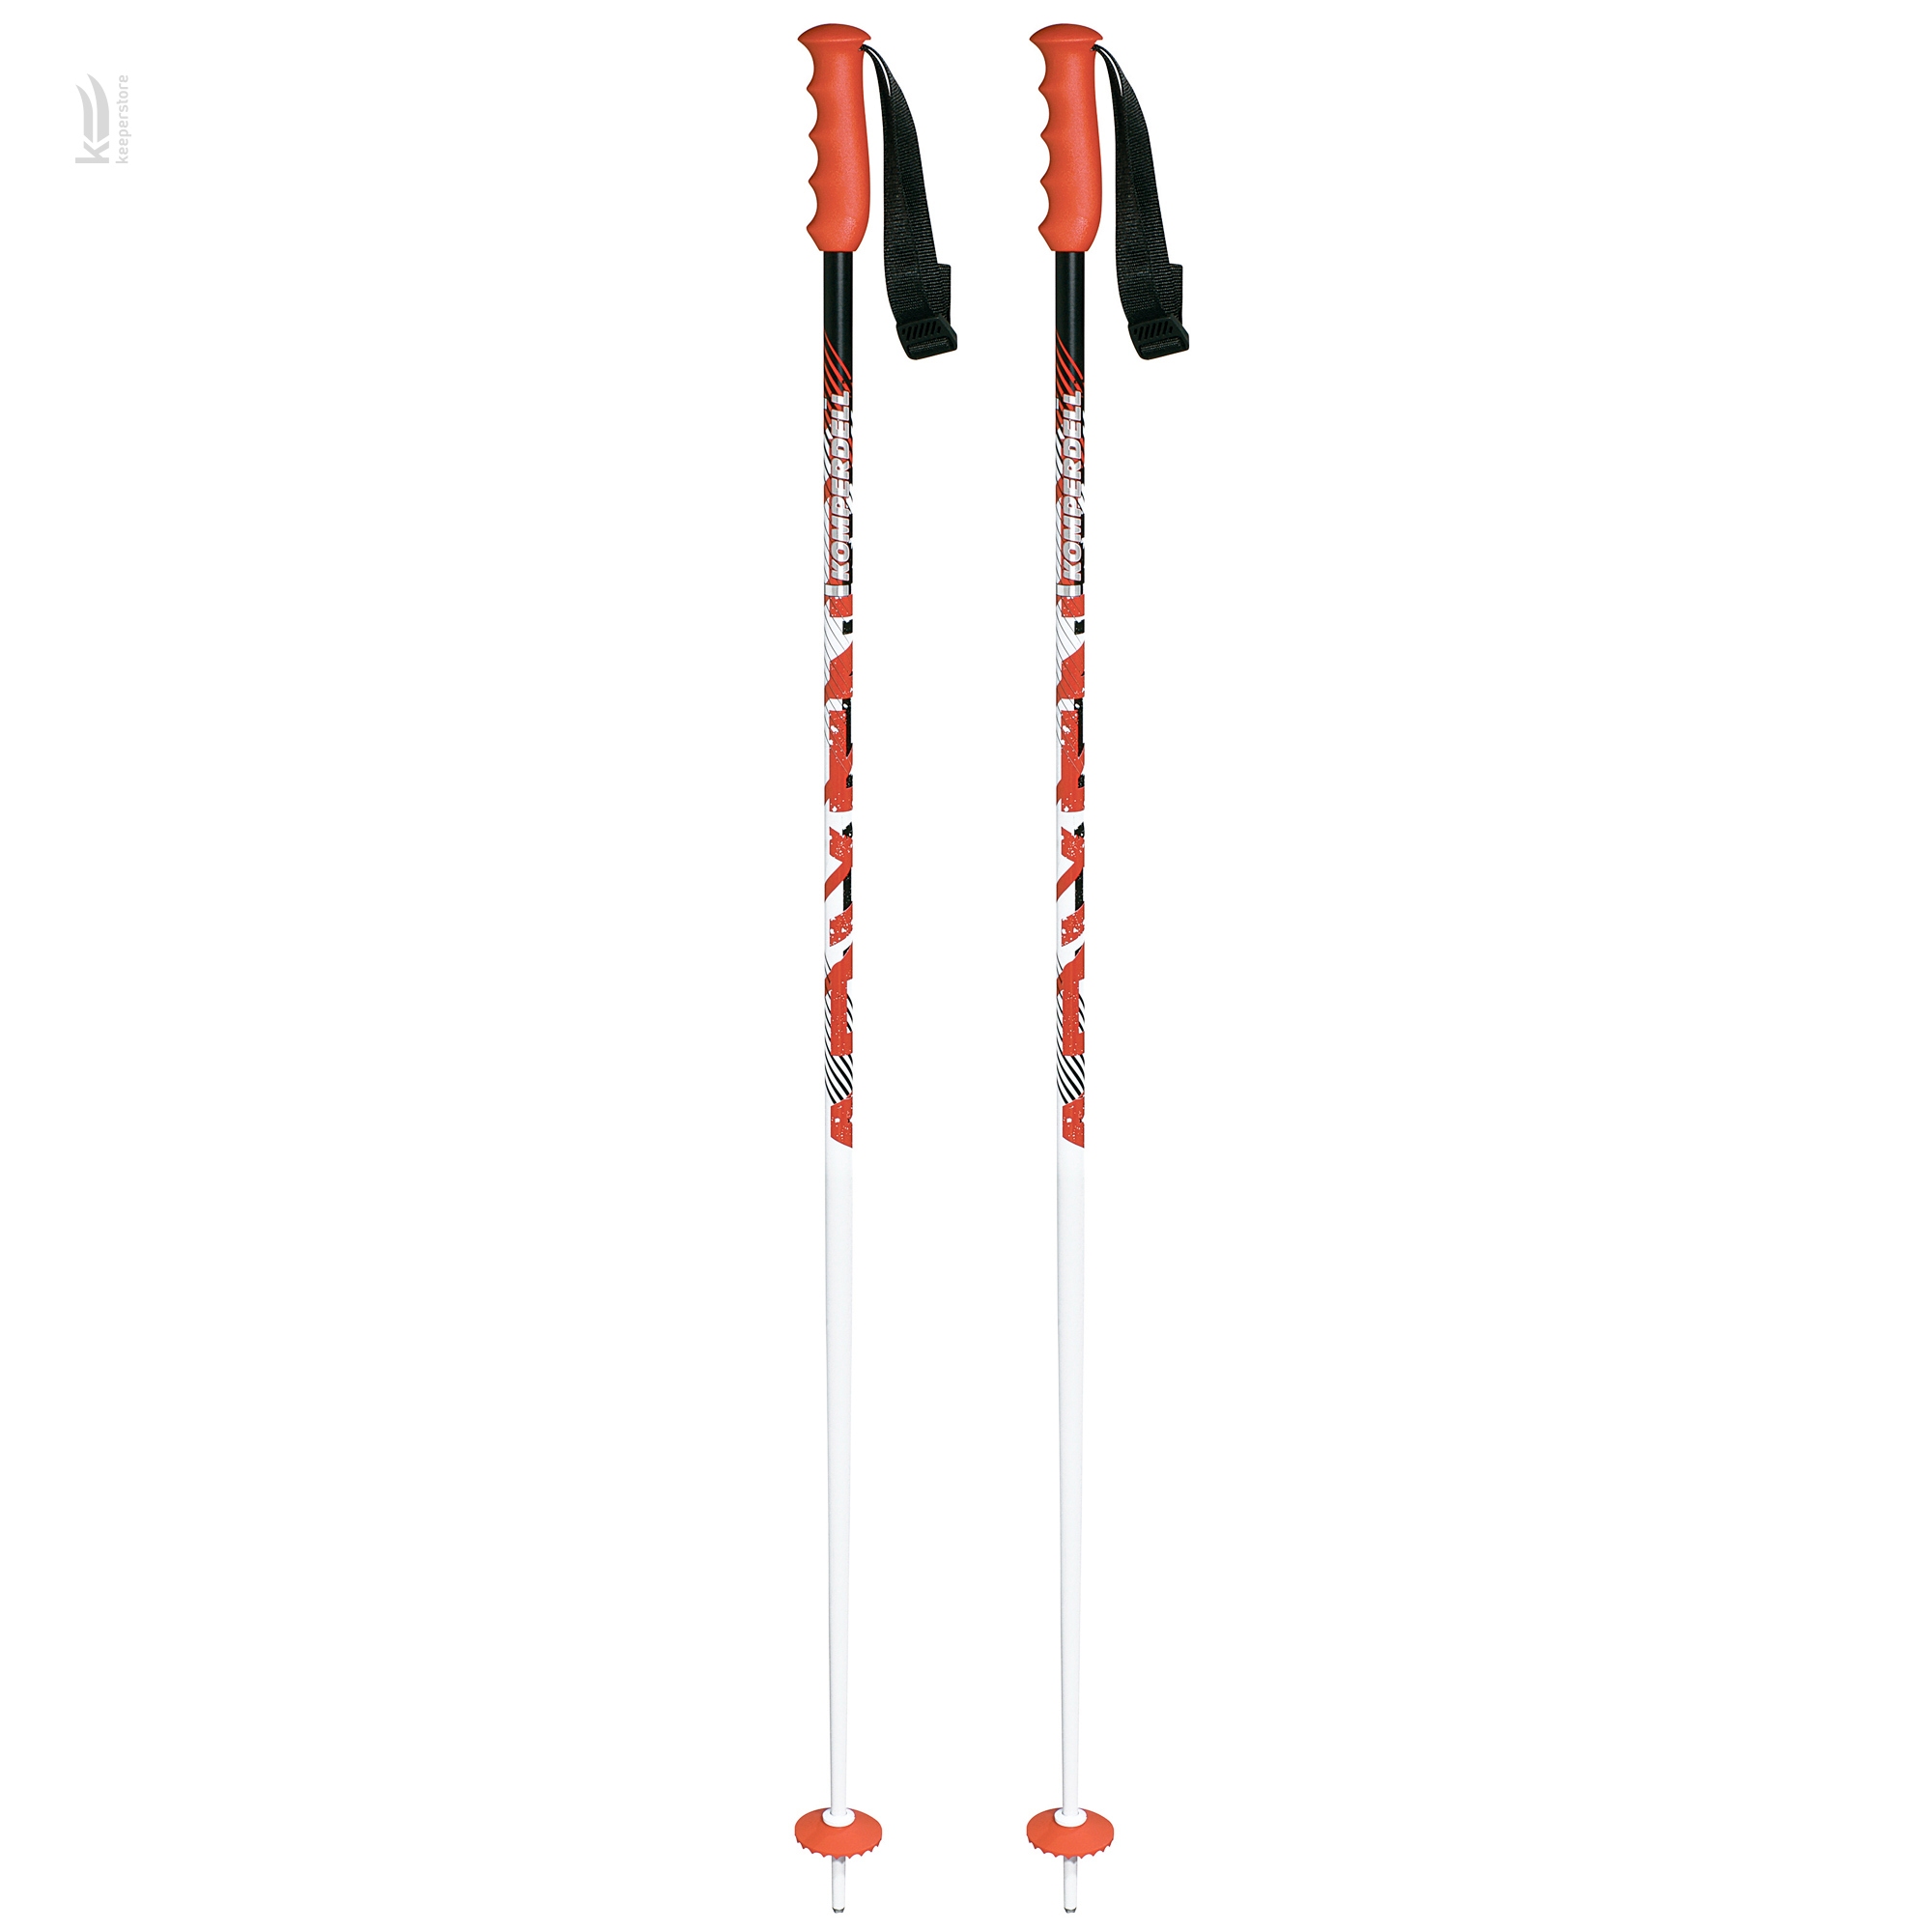 Отзывы алюминиевые лыжные палки Komperdell Alpine Pro Red (110) в Украине